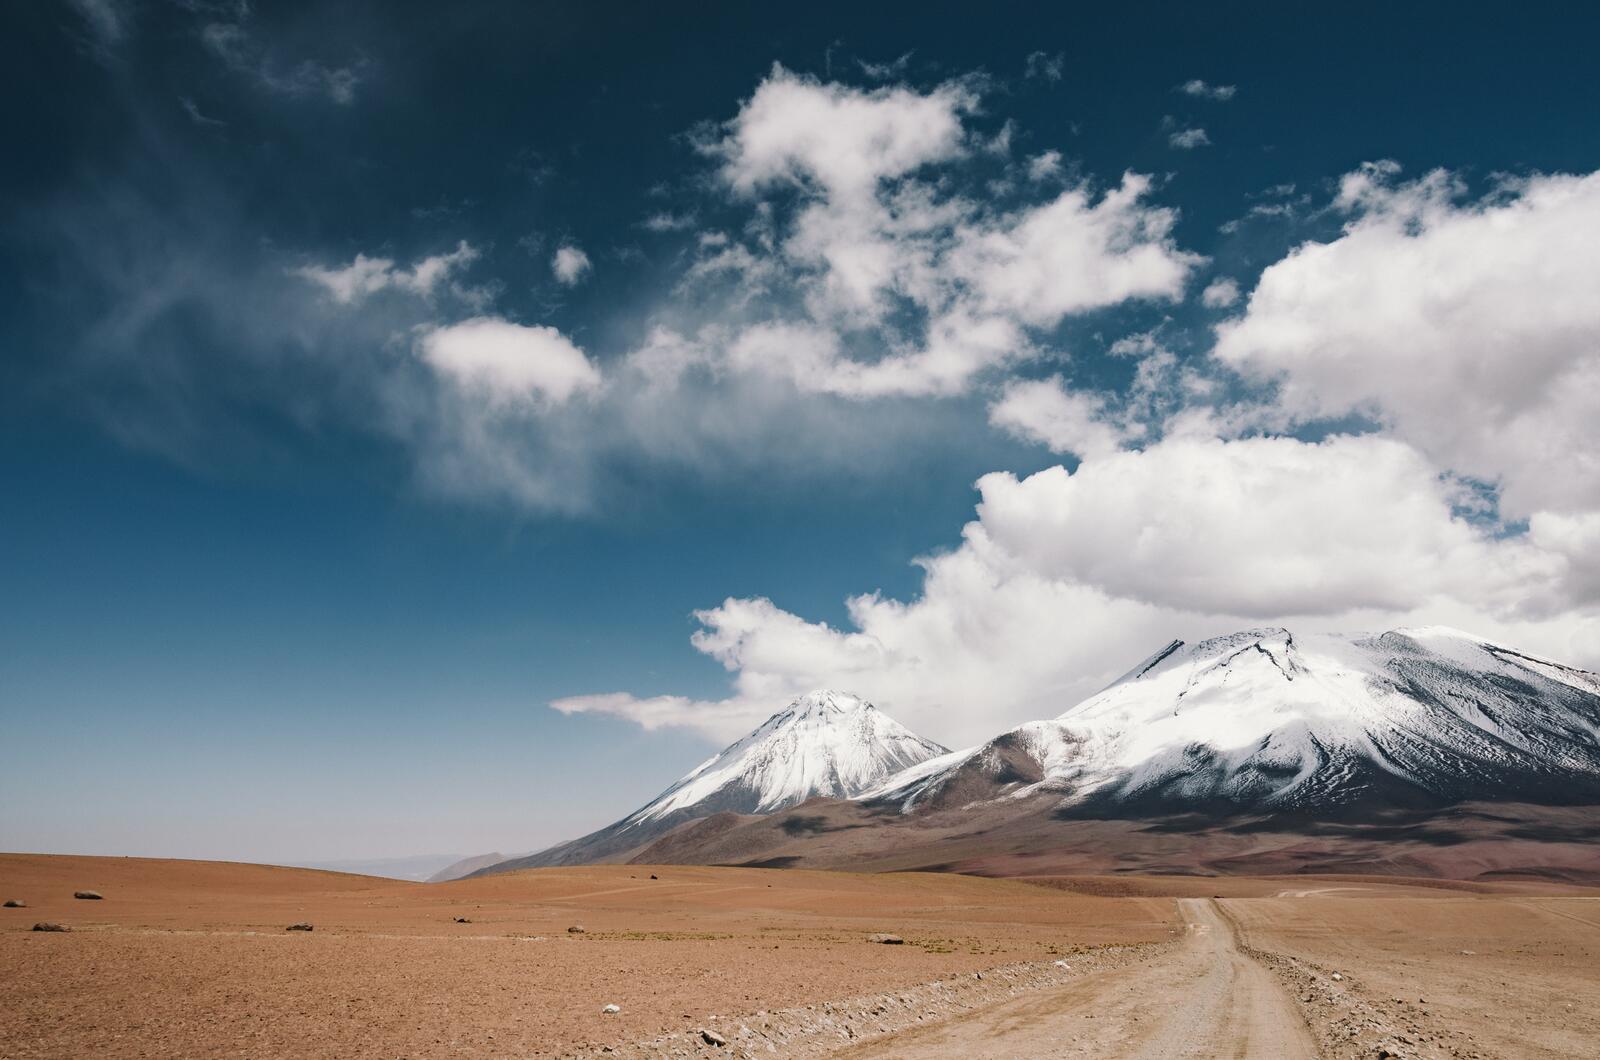 Бесплатное фото Дорога в пустынной местности ведущая к горам с заснеженными холмами